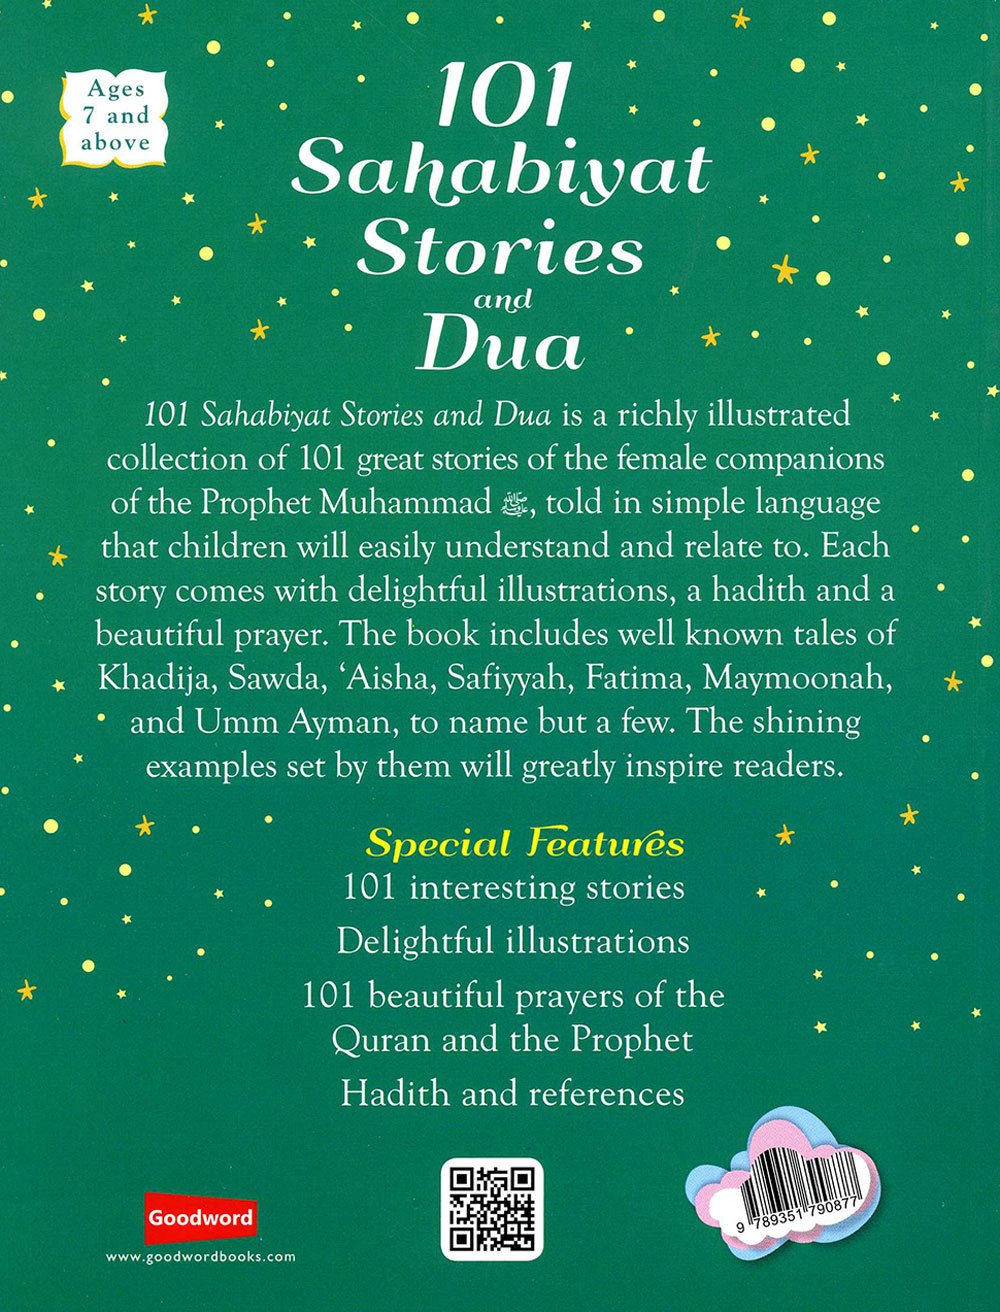 101 Sahabiyat Stories and Dua (Hardbound) - The English Bookshop